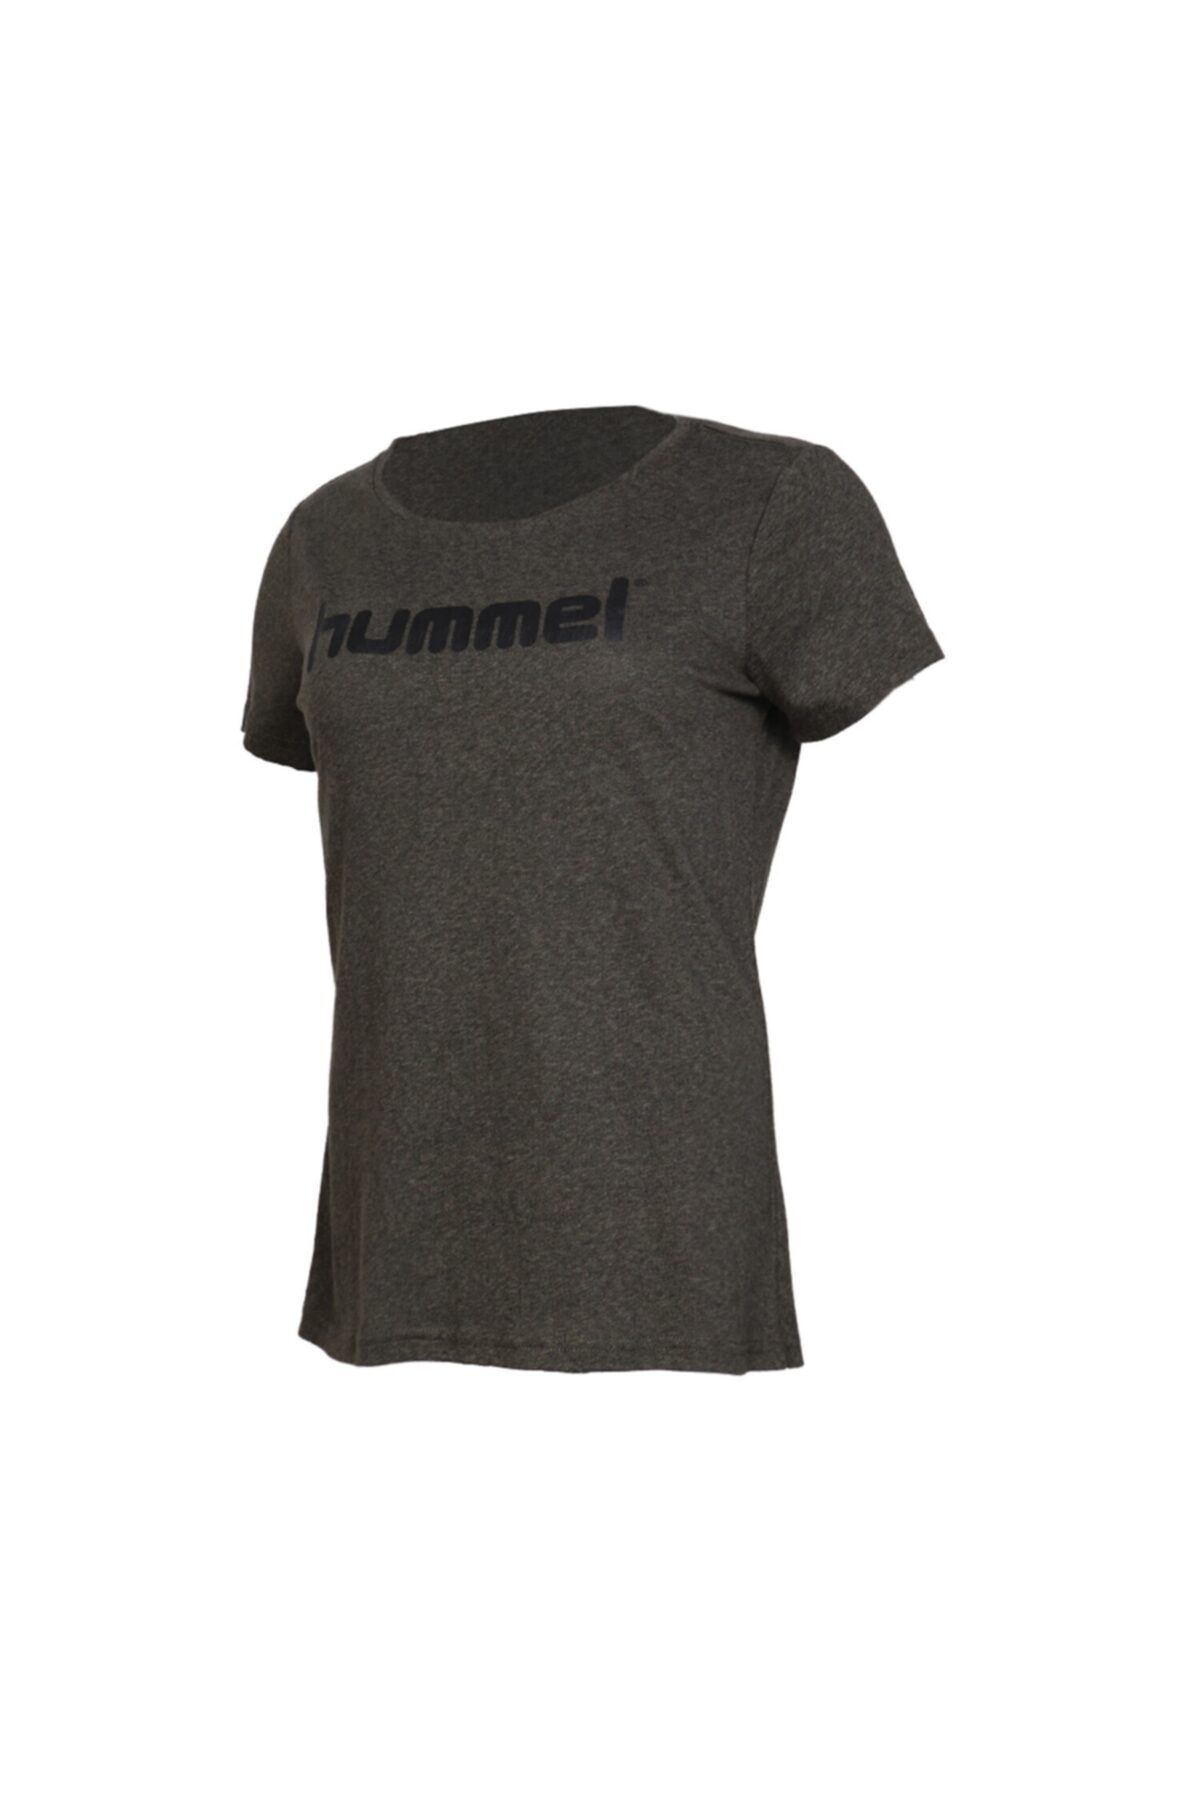 hummel Kadın T-shirt 910649-6119